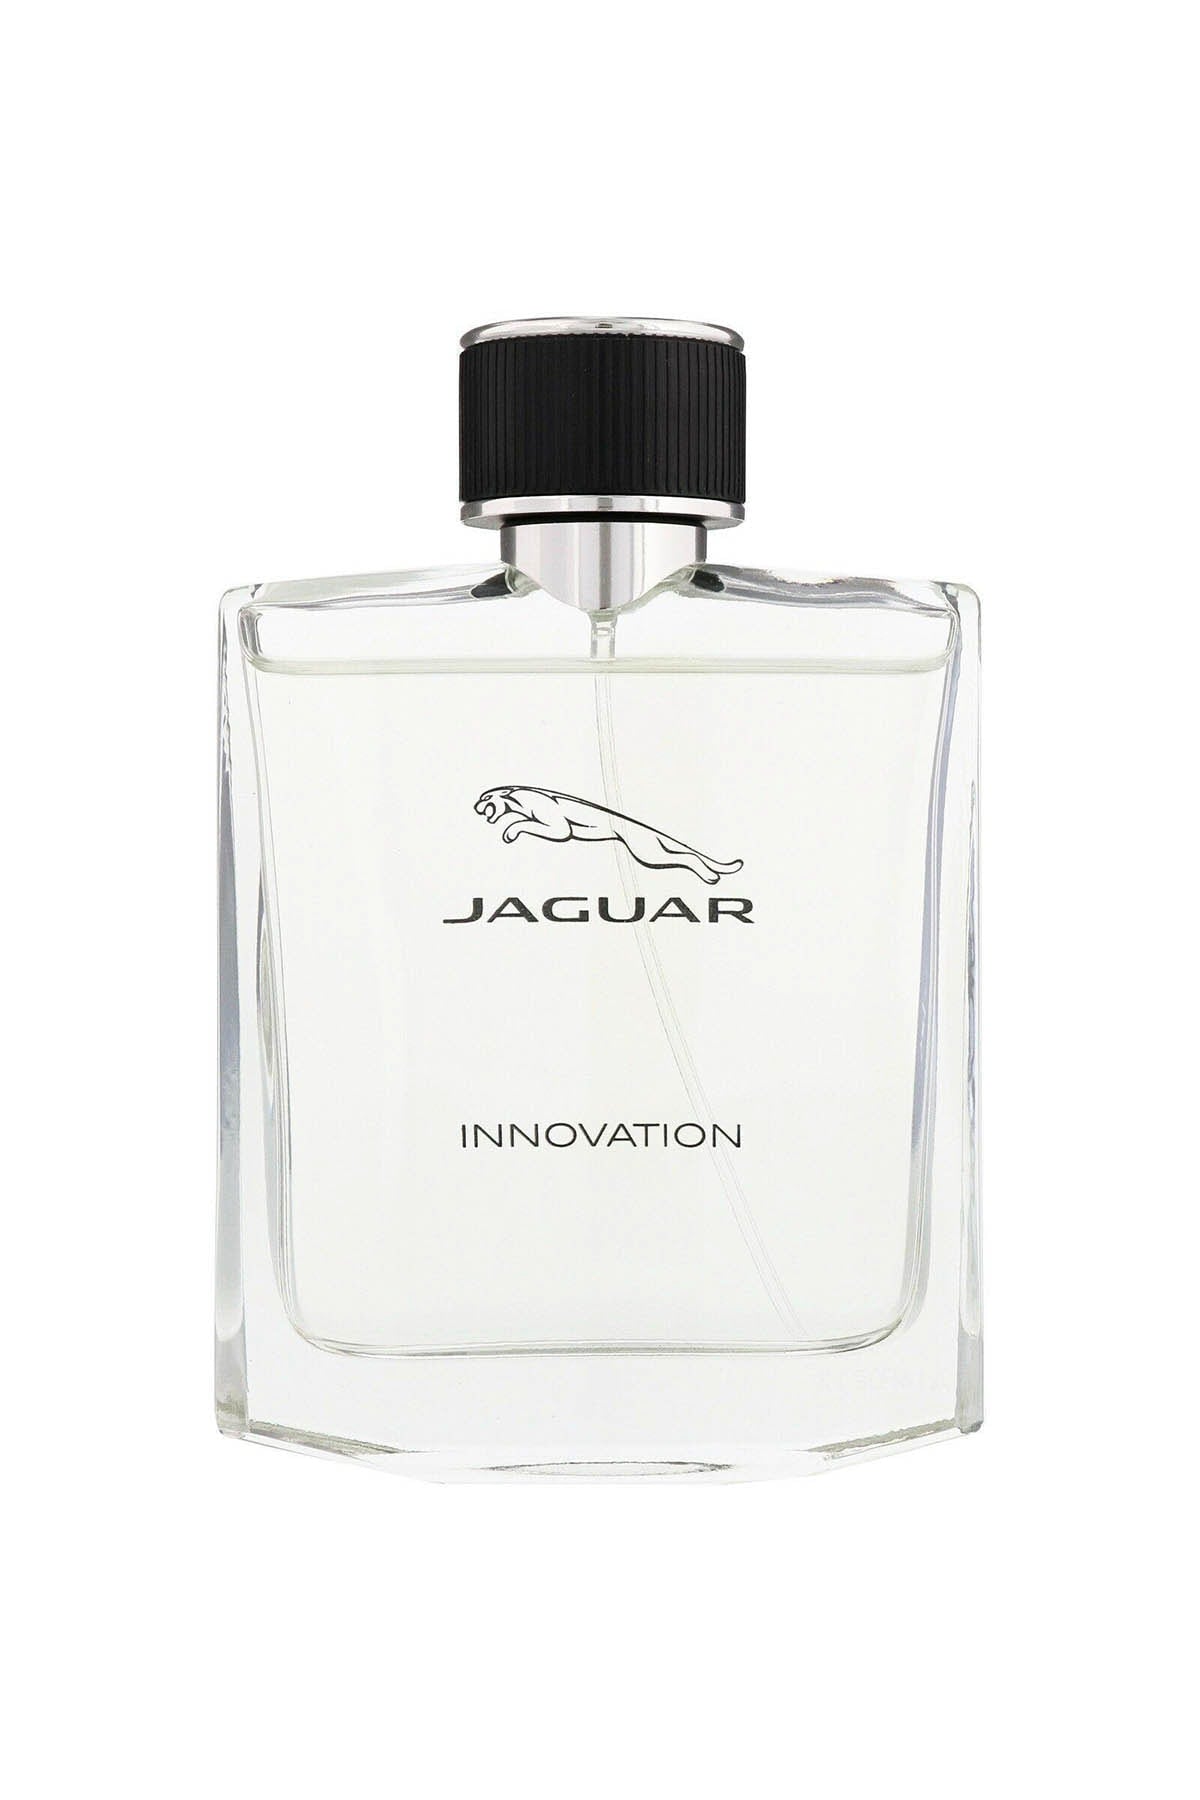 Jaguar Innovation EDT M 100ml Boxed